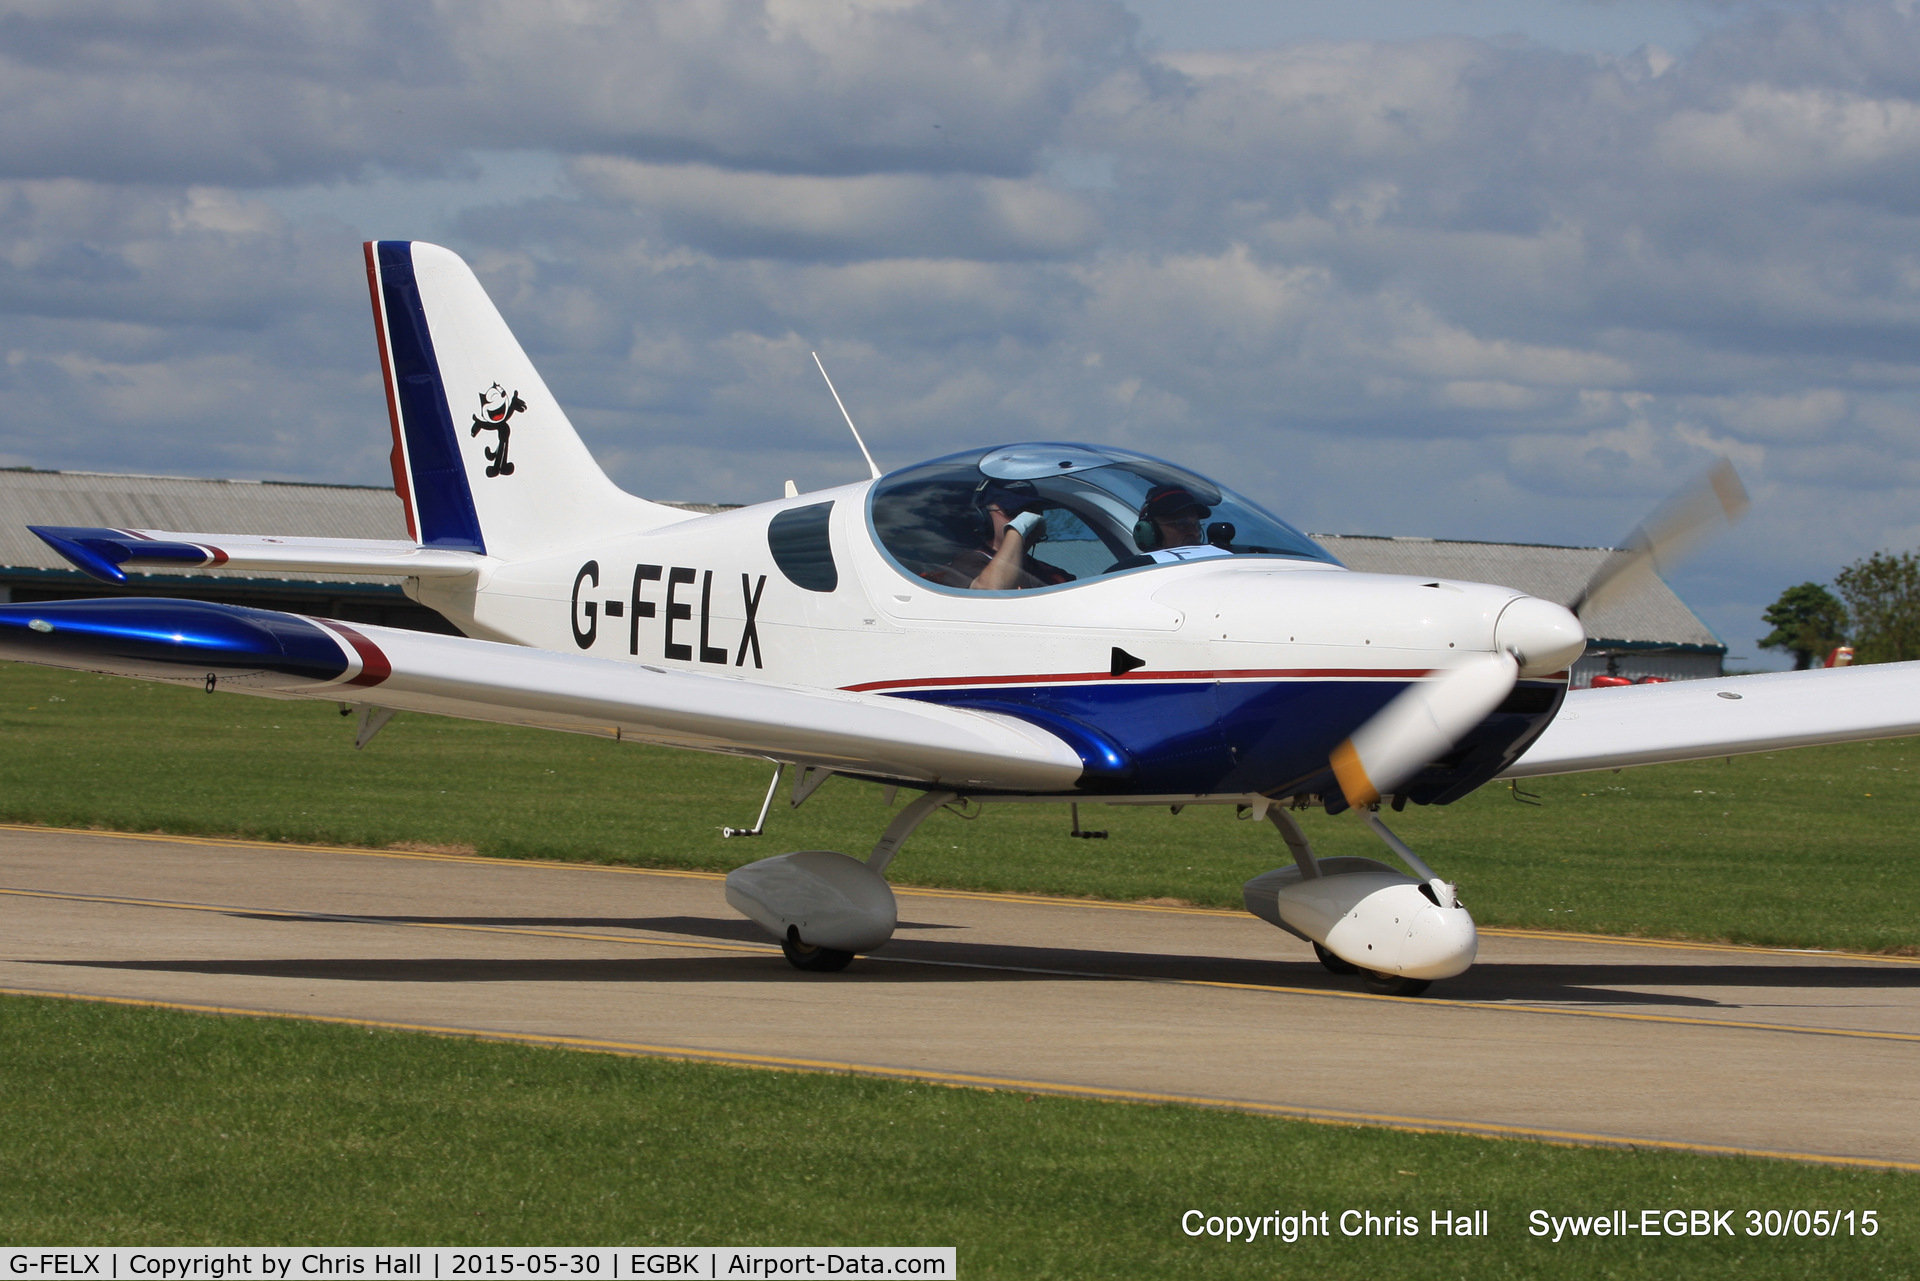 G-FELX, 2007 CZAW SportCruiser C/N PFA 338-14661, at Aeroexpo 2015